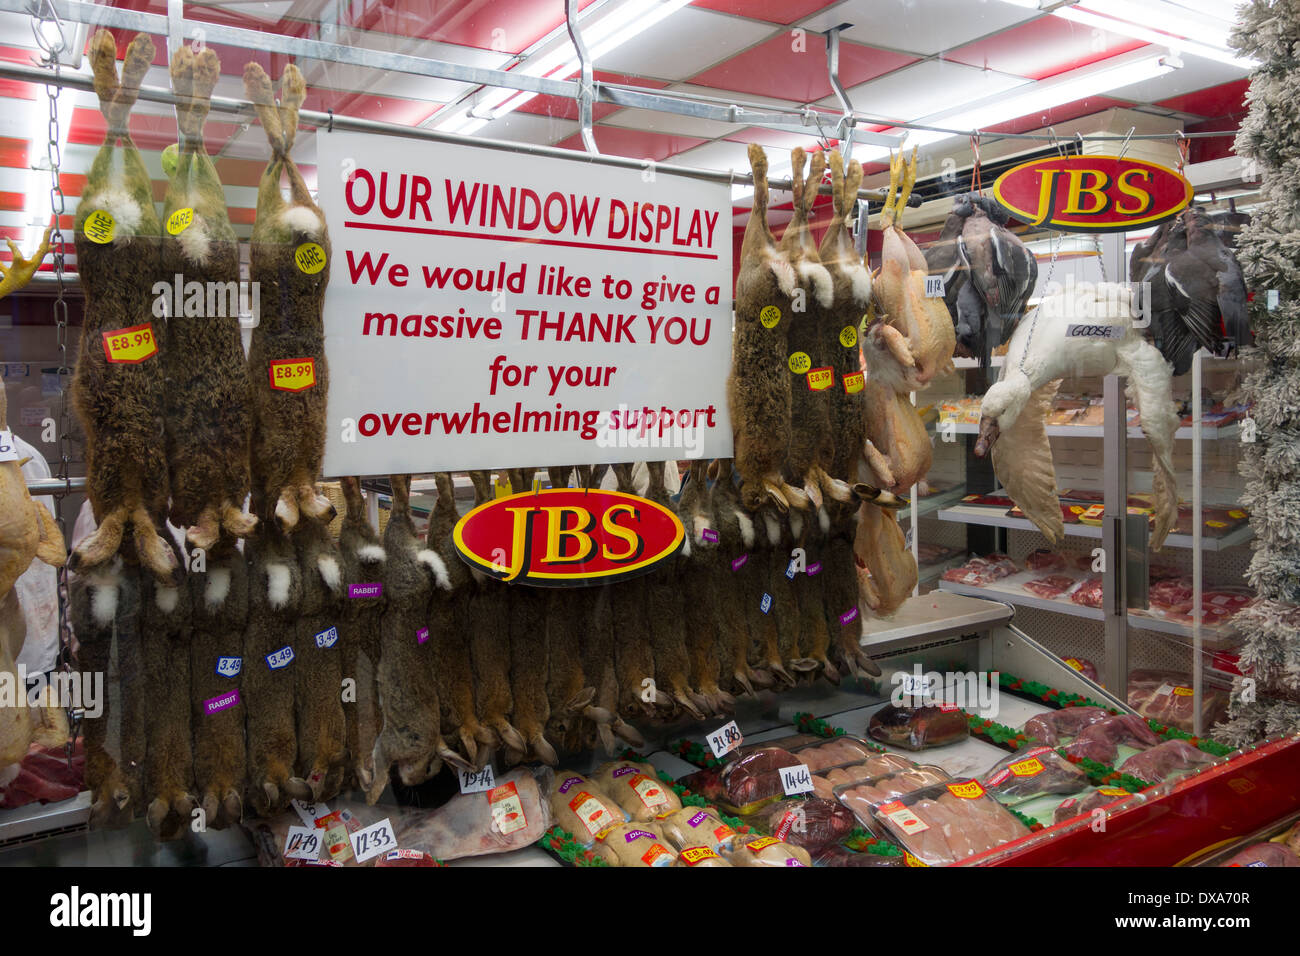 La recientemente restaurada de visualización de ventana de carnicero en Sudbury, tomado previamente abajo porque algunos compradores se encuentran ofensivo. Foto de stock